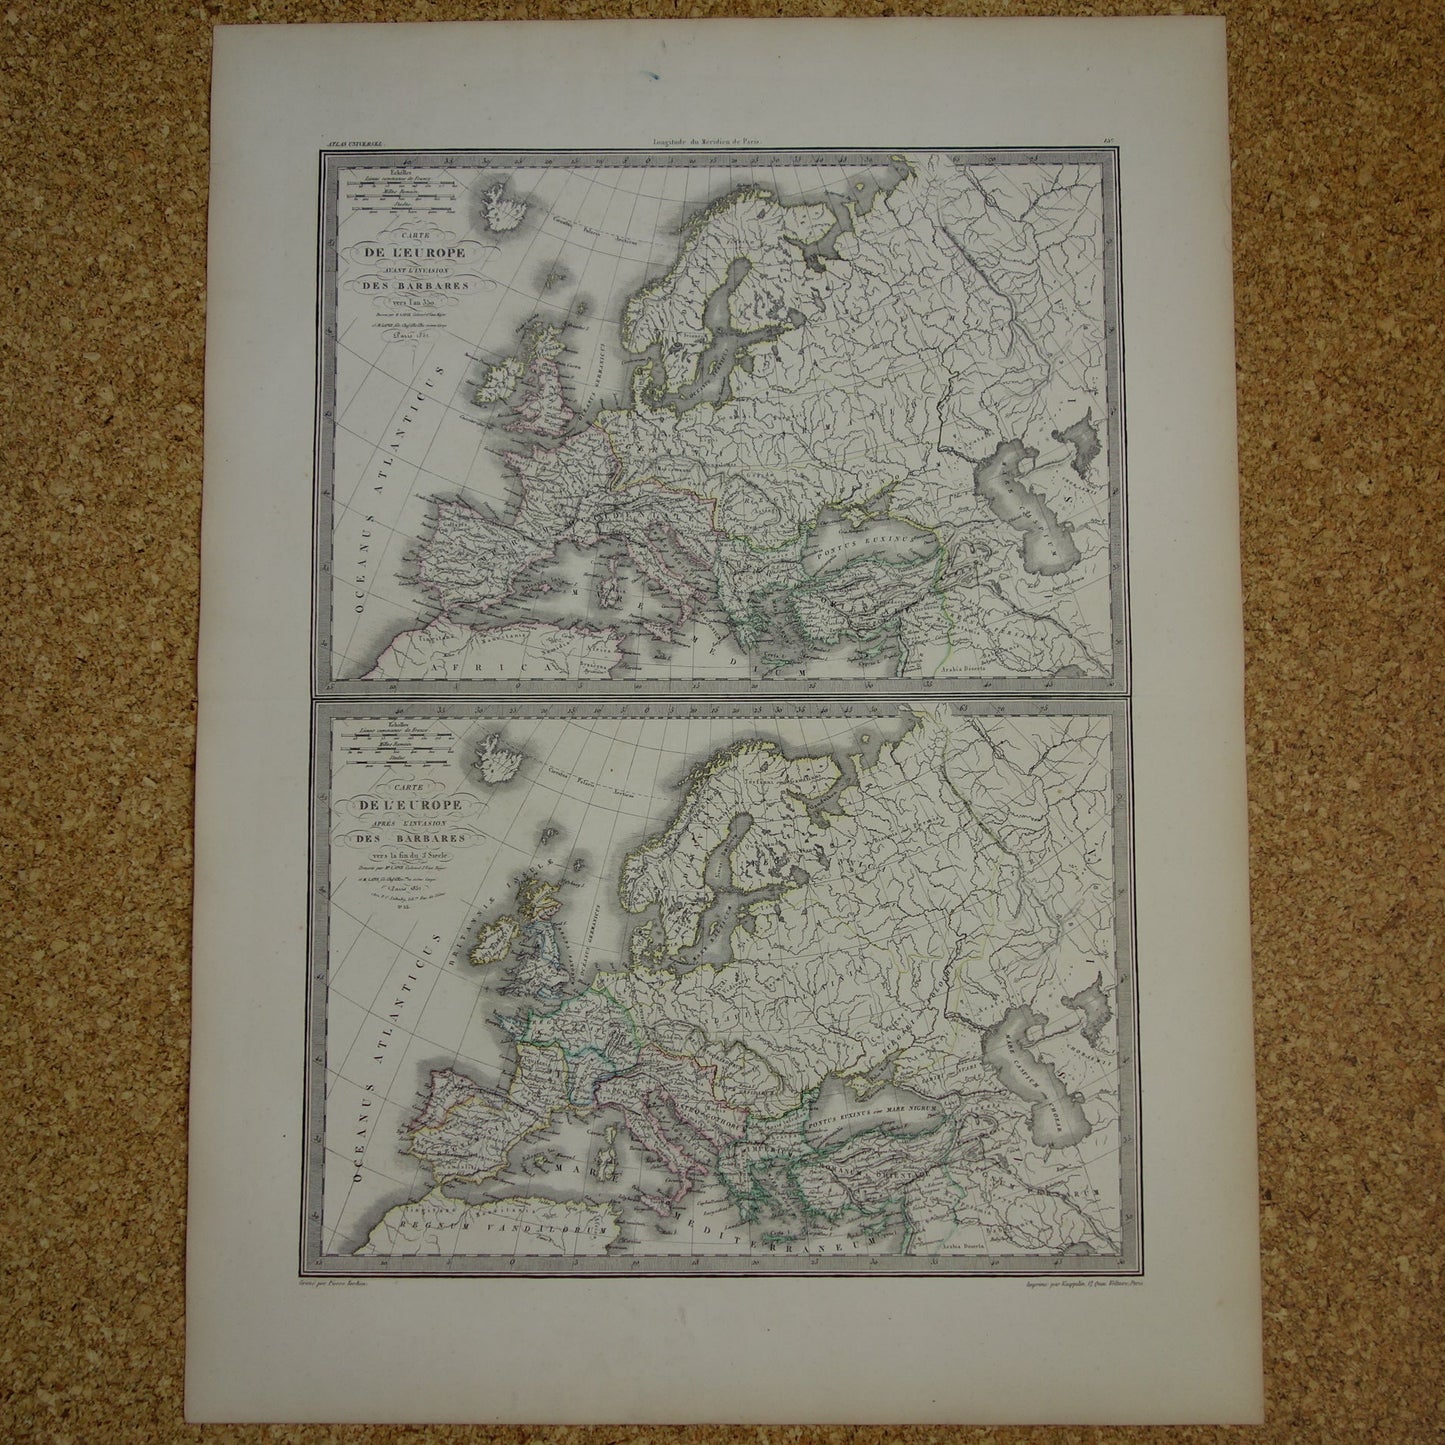 Oude kaarten over geschiedenis van Europa voor en na grote volksverhuizing antieke landkaart uit 1851 invallen barbaren